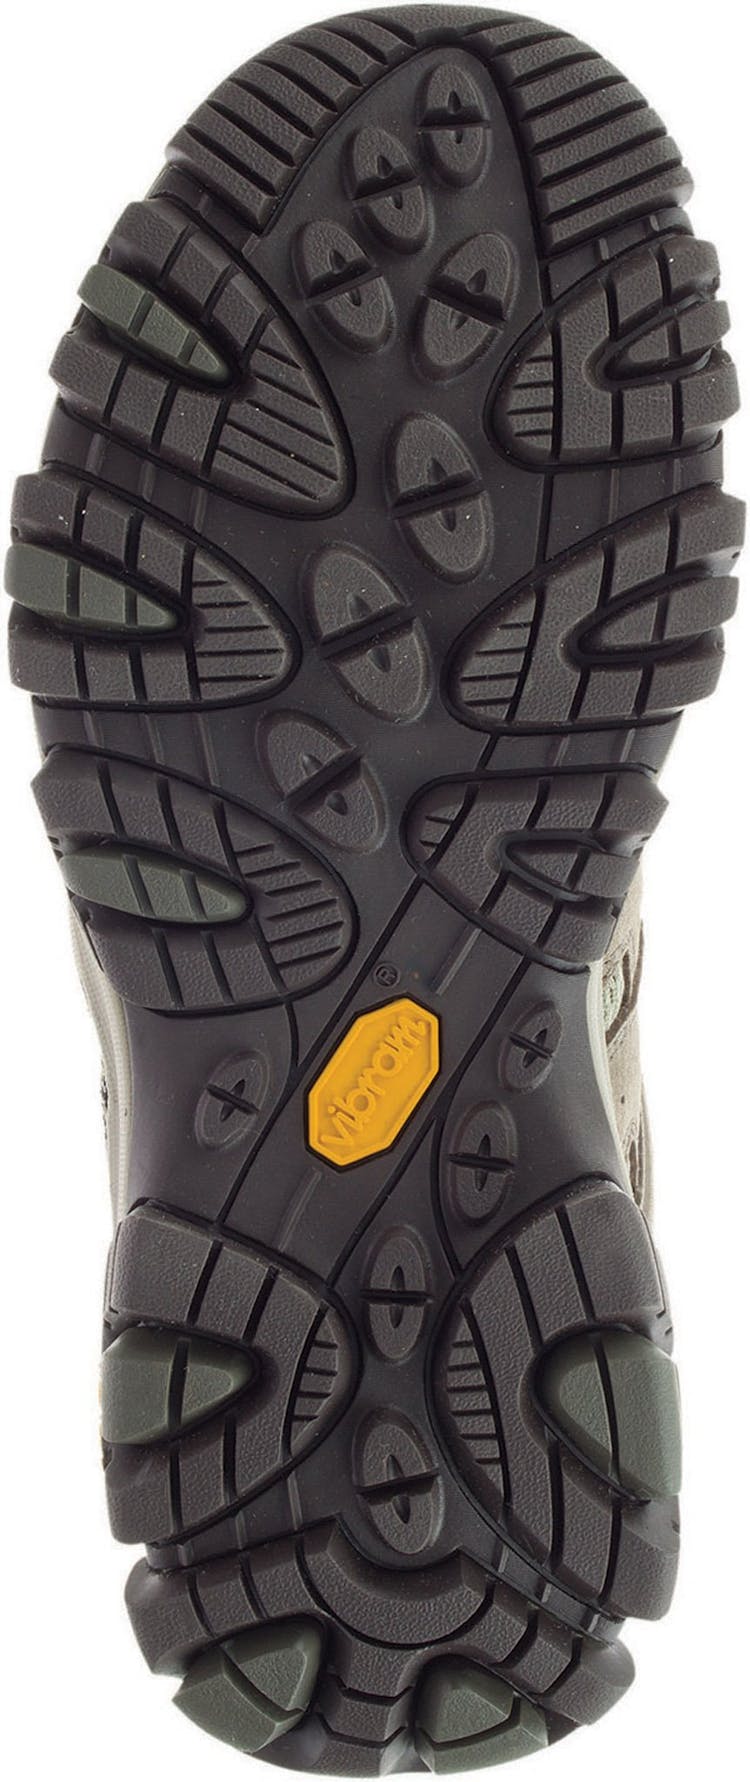 Numéro de l'image de la galerie de produits 4 pour le produit Chaussures imperméables Moab 3 Mid - Femme